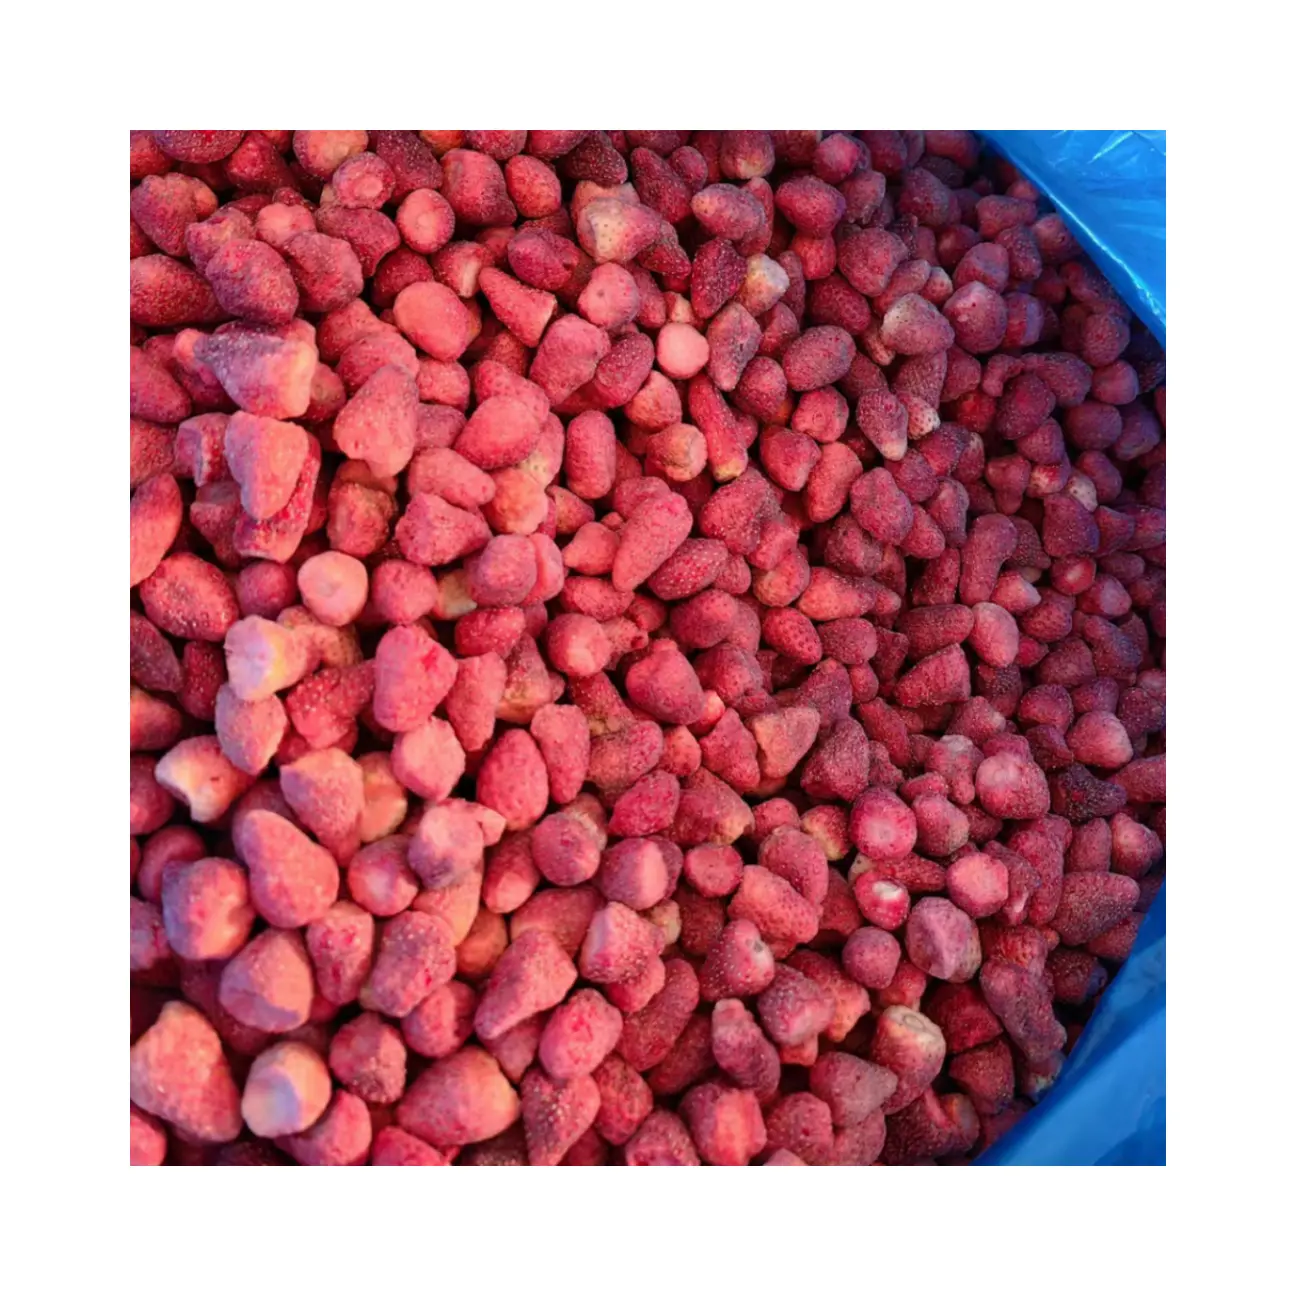 Frutas misturadas liofilizadas a granel por atacado de fábrica, frutas liofilizadas de morango, marca WXHT, entrega rápida e amostra grátis